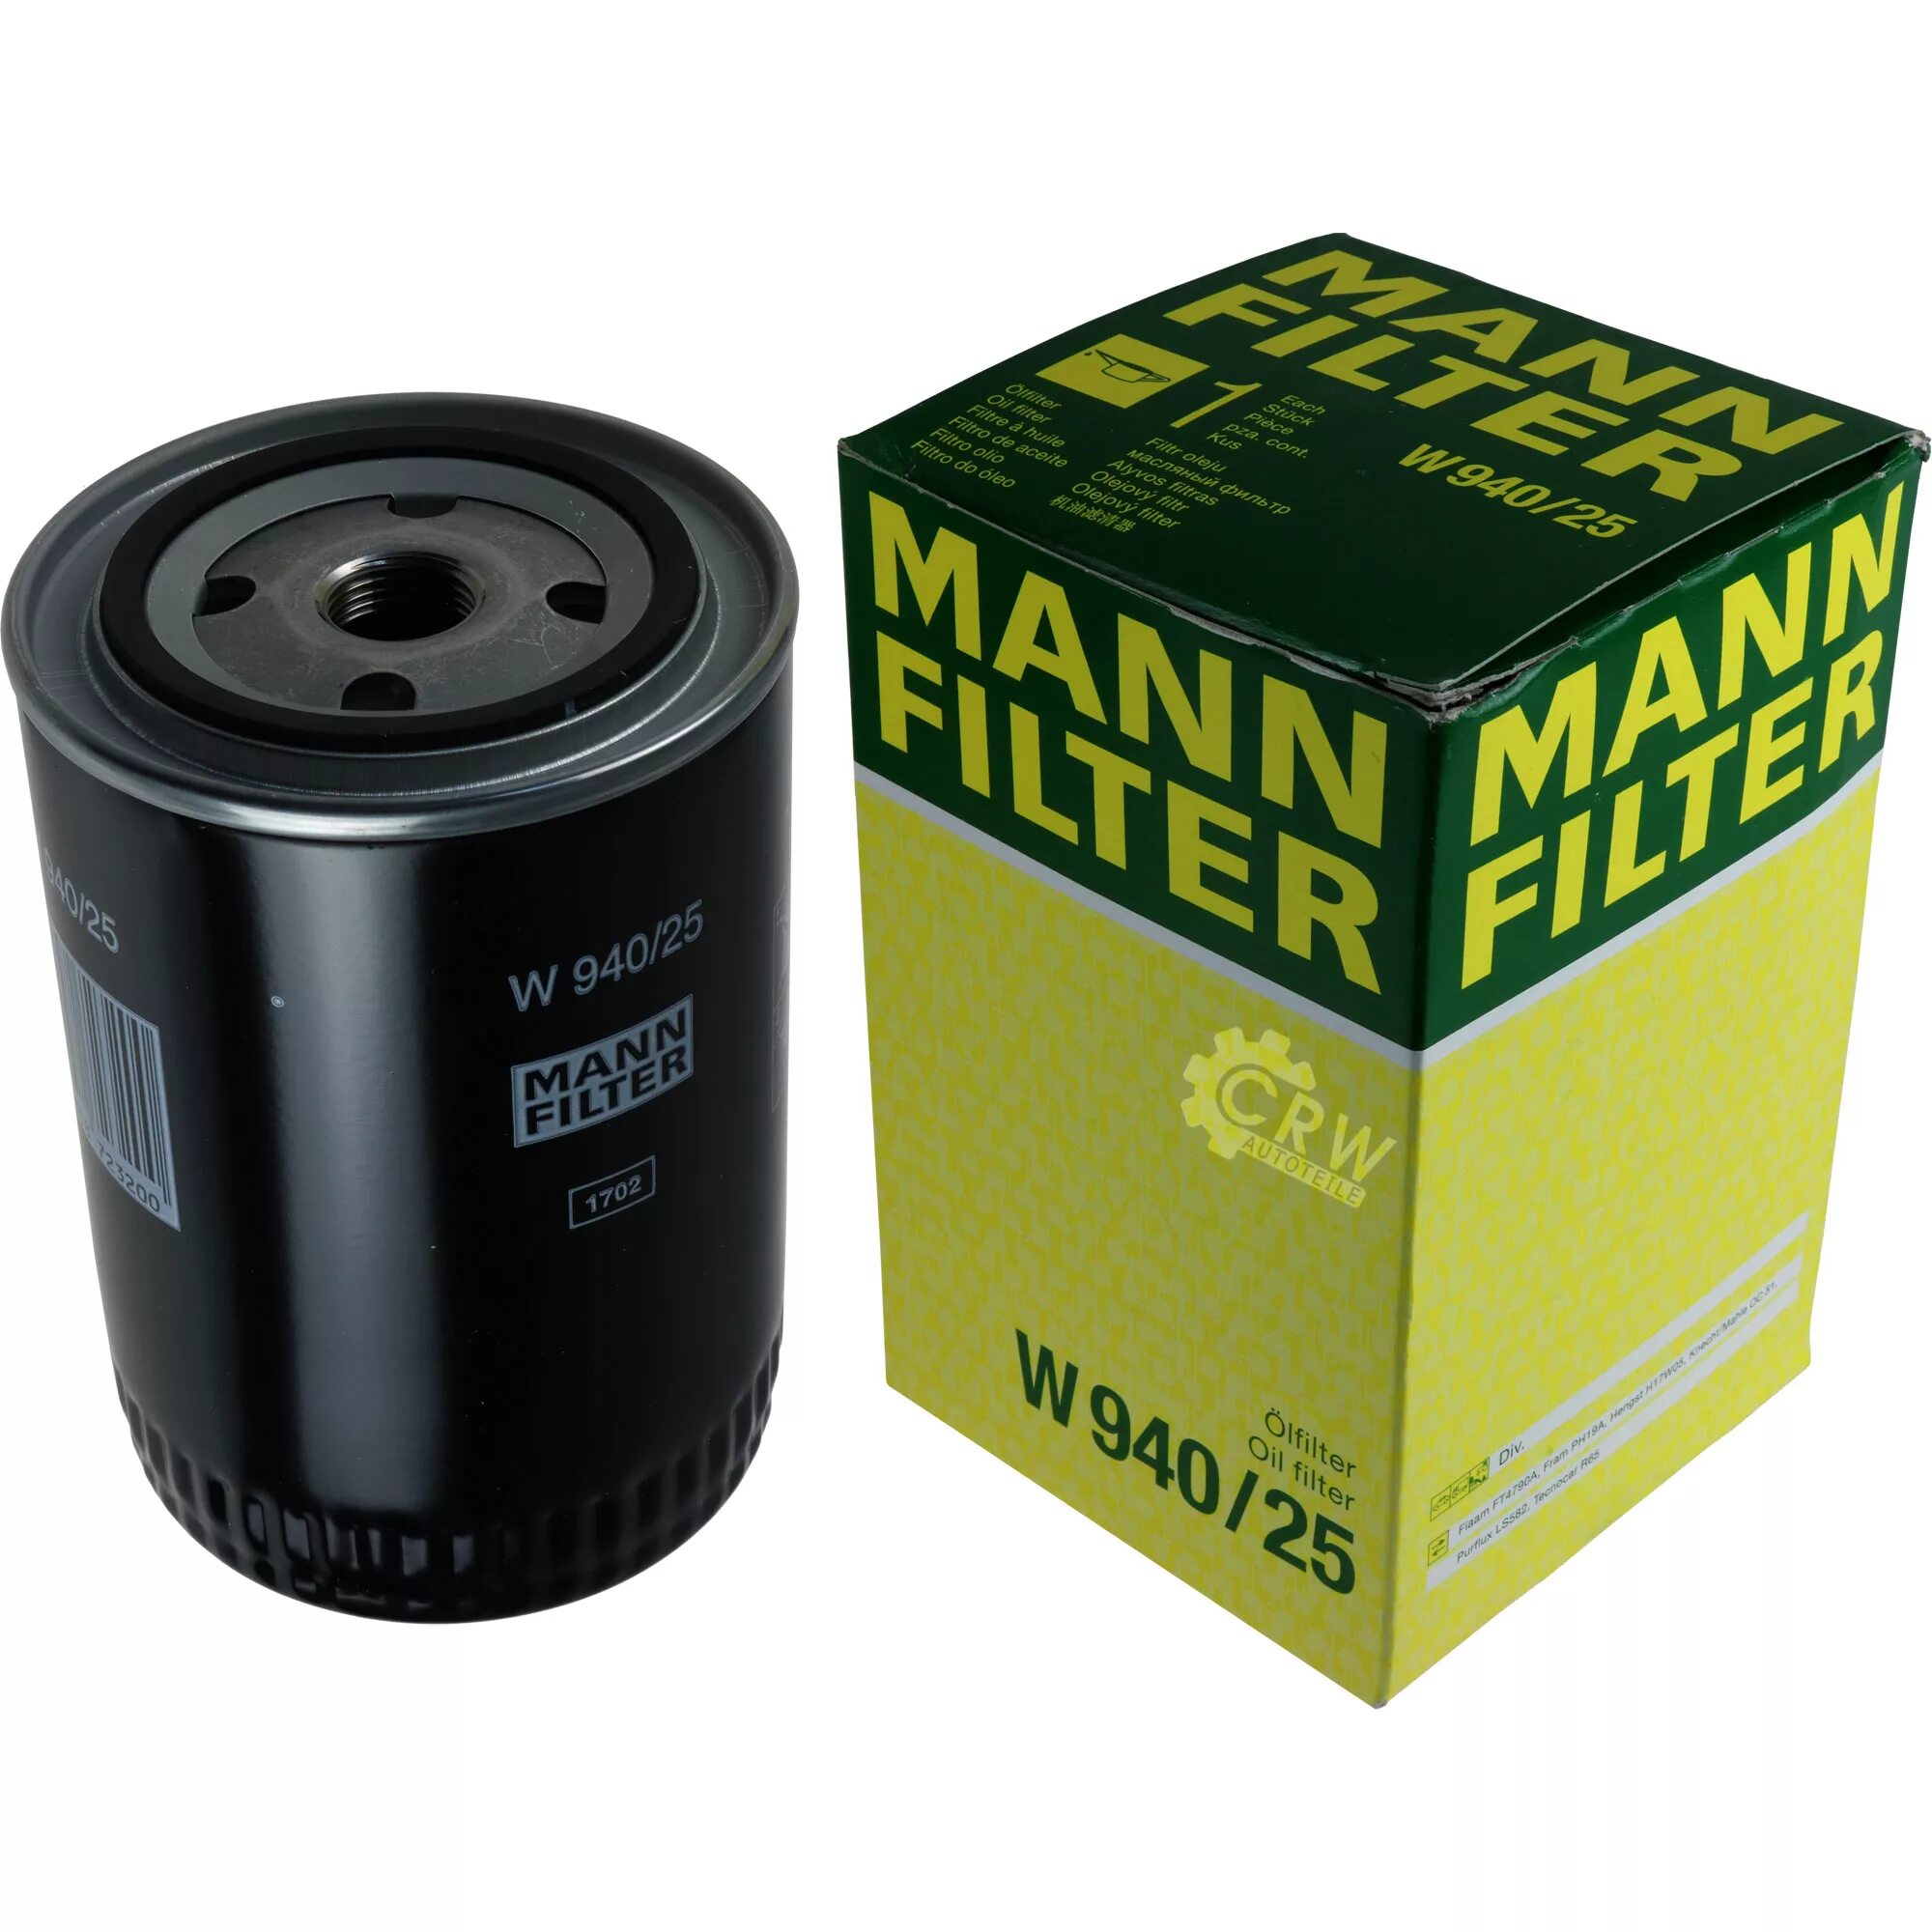 Масляный манн. Mann-Filter w940 фильтр масло. W940/25 фильтр масляный. Фильтр масляный Mann w7041. Масляный фильтр Mann-Filter w 940/25 4.8.